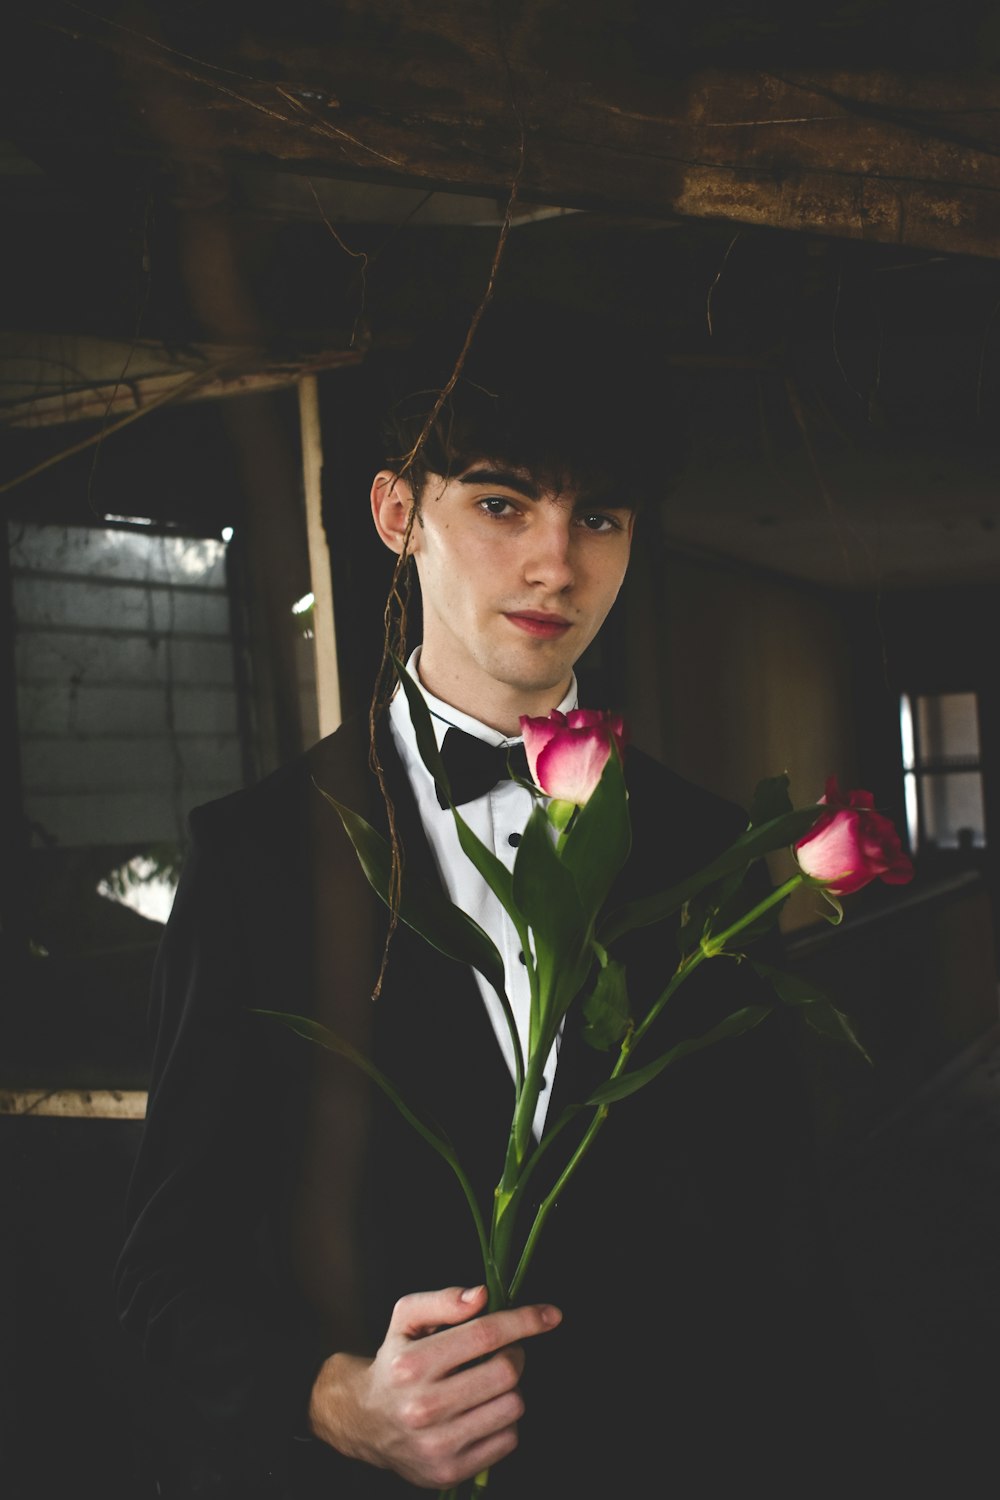 homem vestindo terno formal preto e branco segurando duas rosas vermelhas